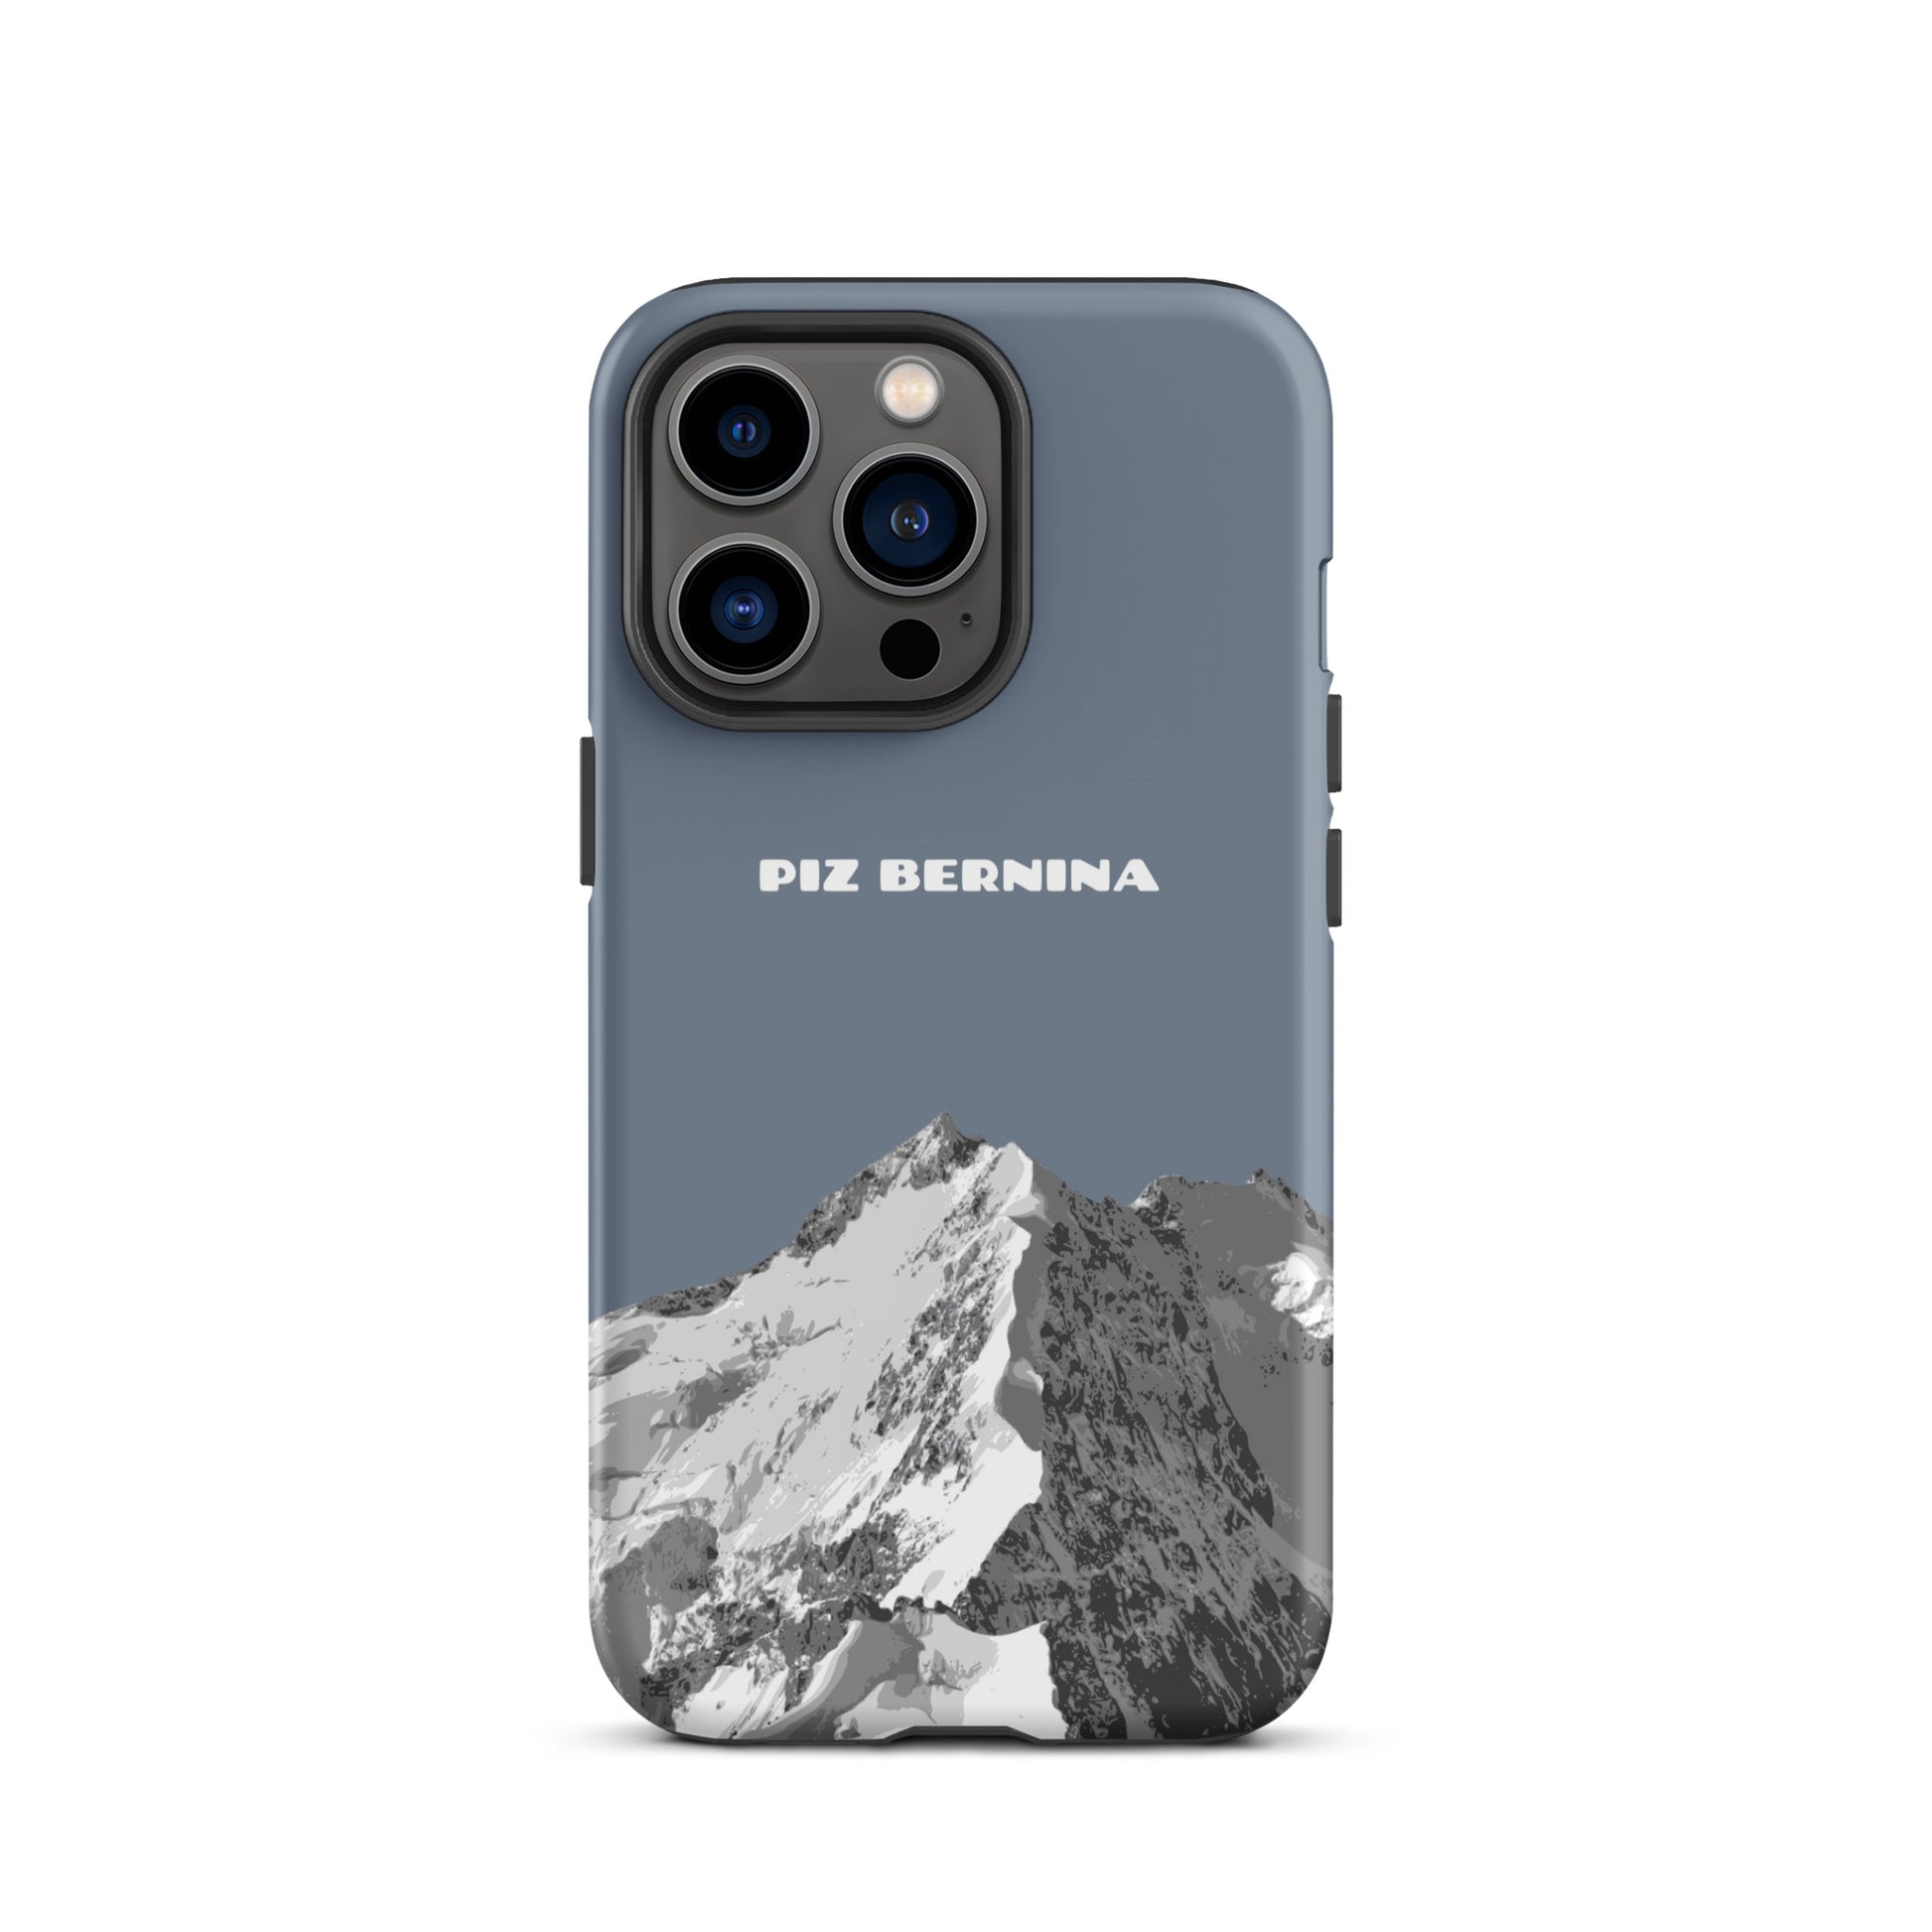 Hülle für das iPhone 13 Pro von Apple in der Farbe Schiefergrau, dass den Piz Bernina in Graubünden zeigt.